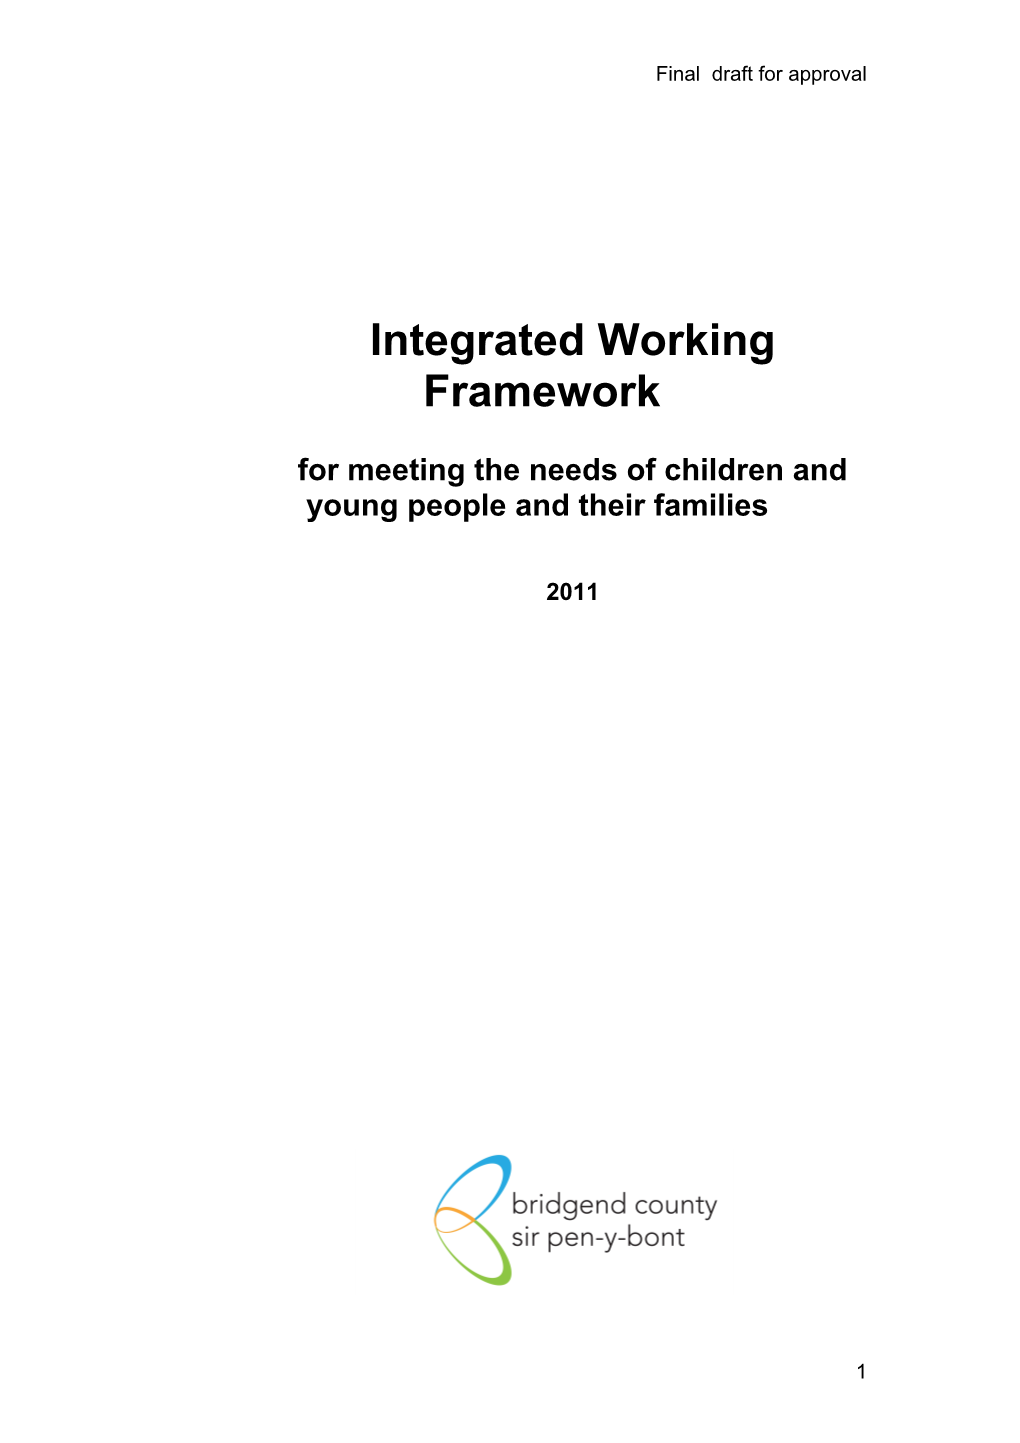 Integrated Working Framework: Draft V 0